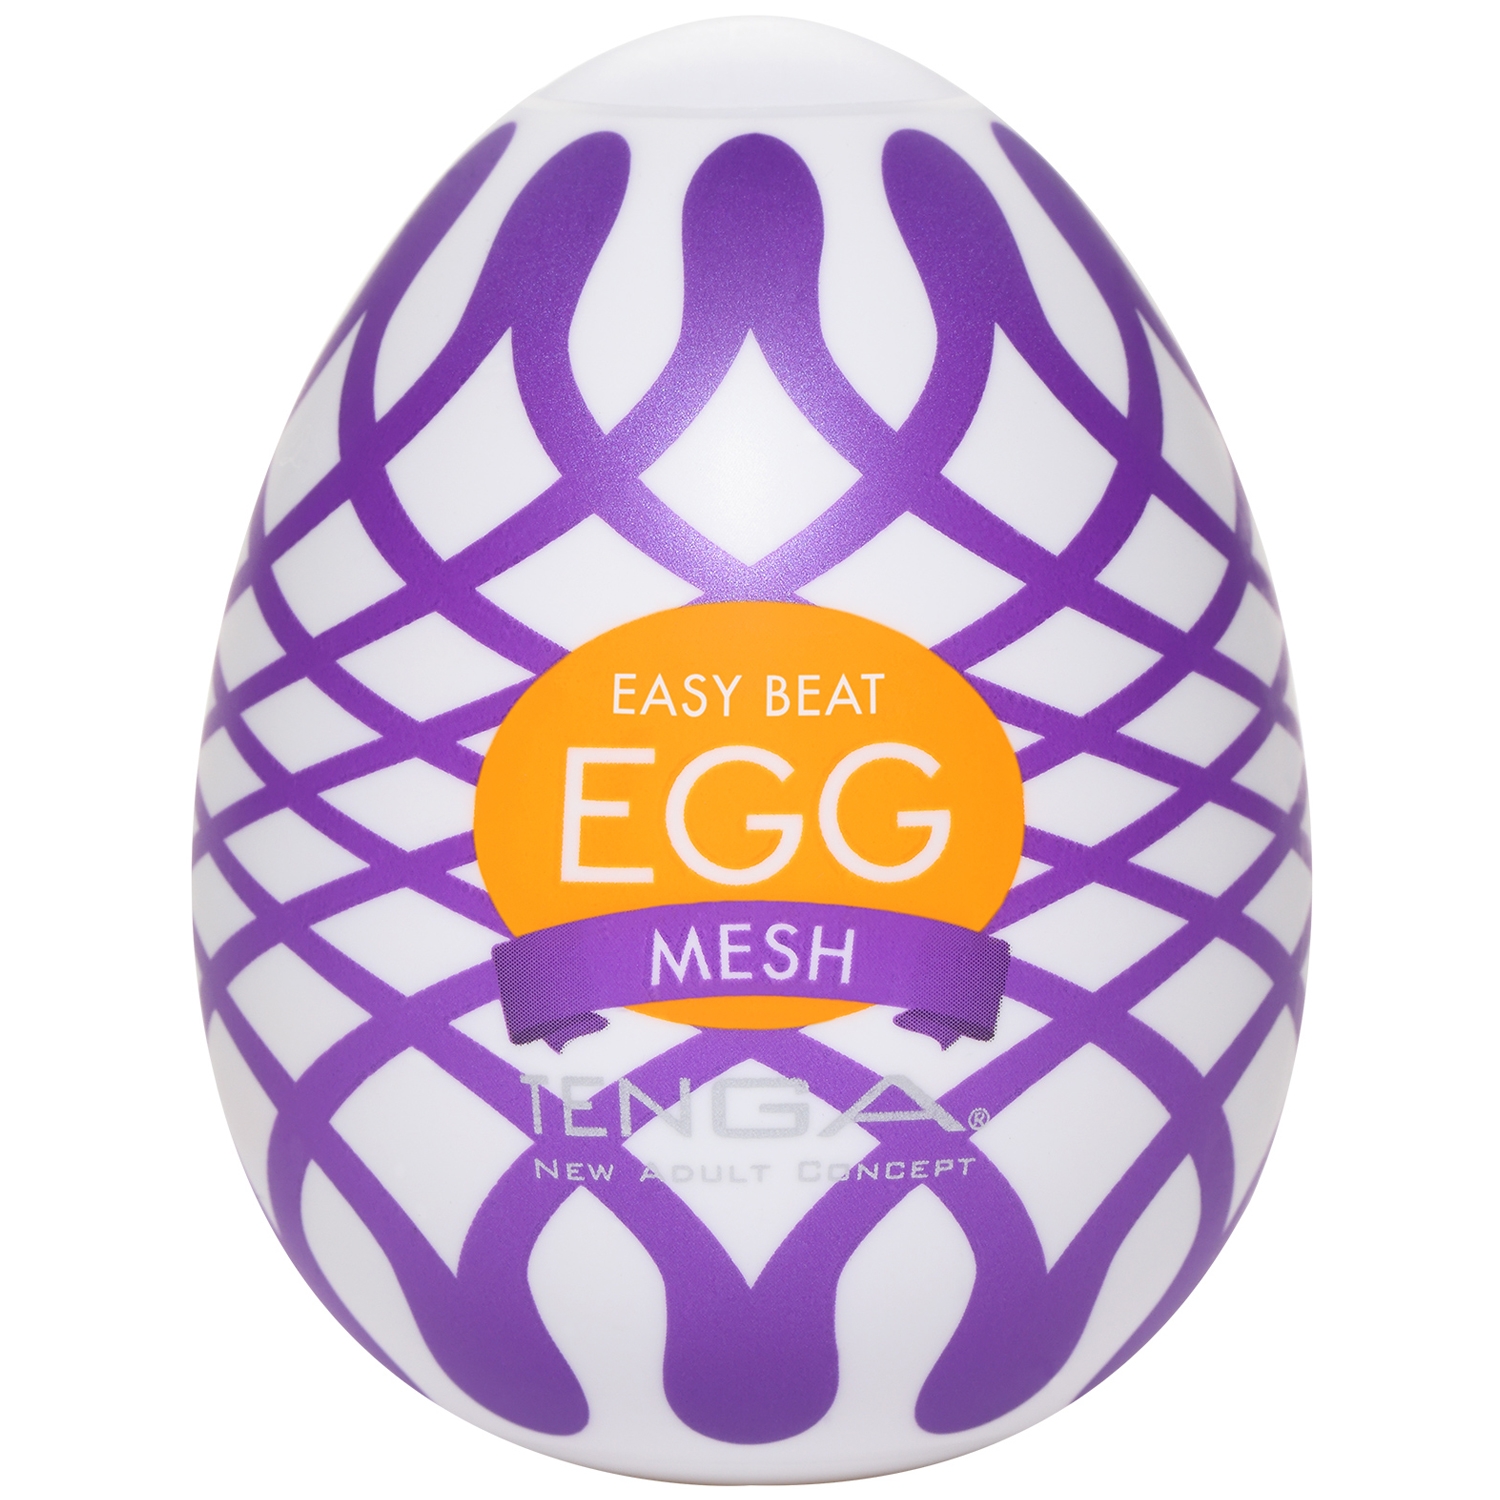 TENGA Egg Mesh - White